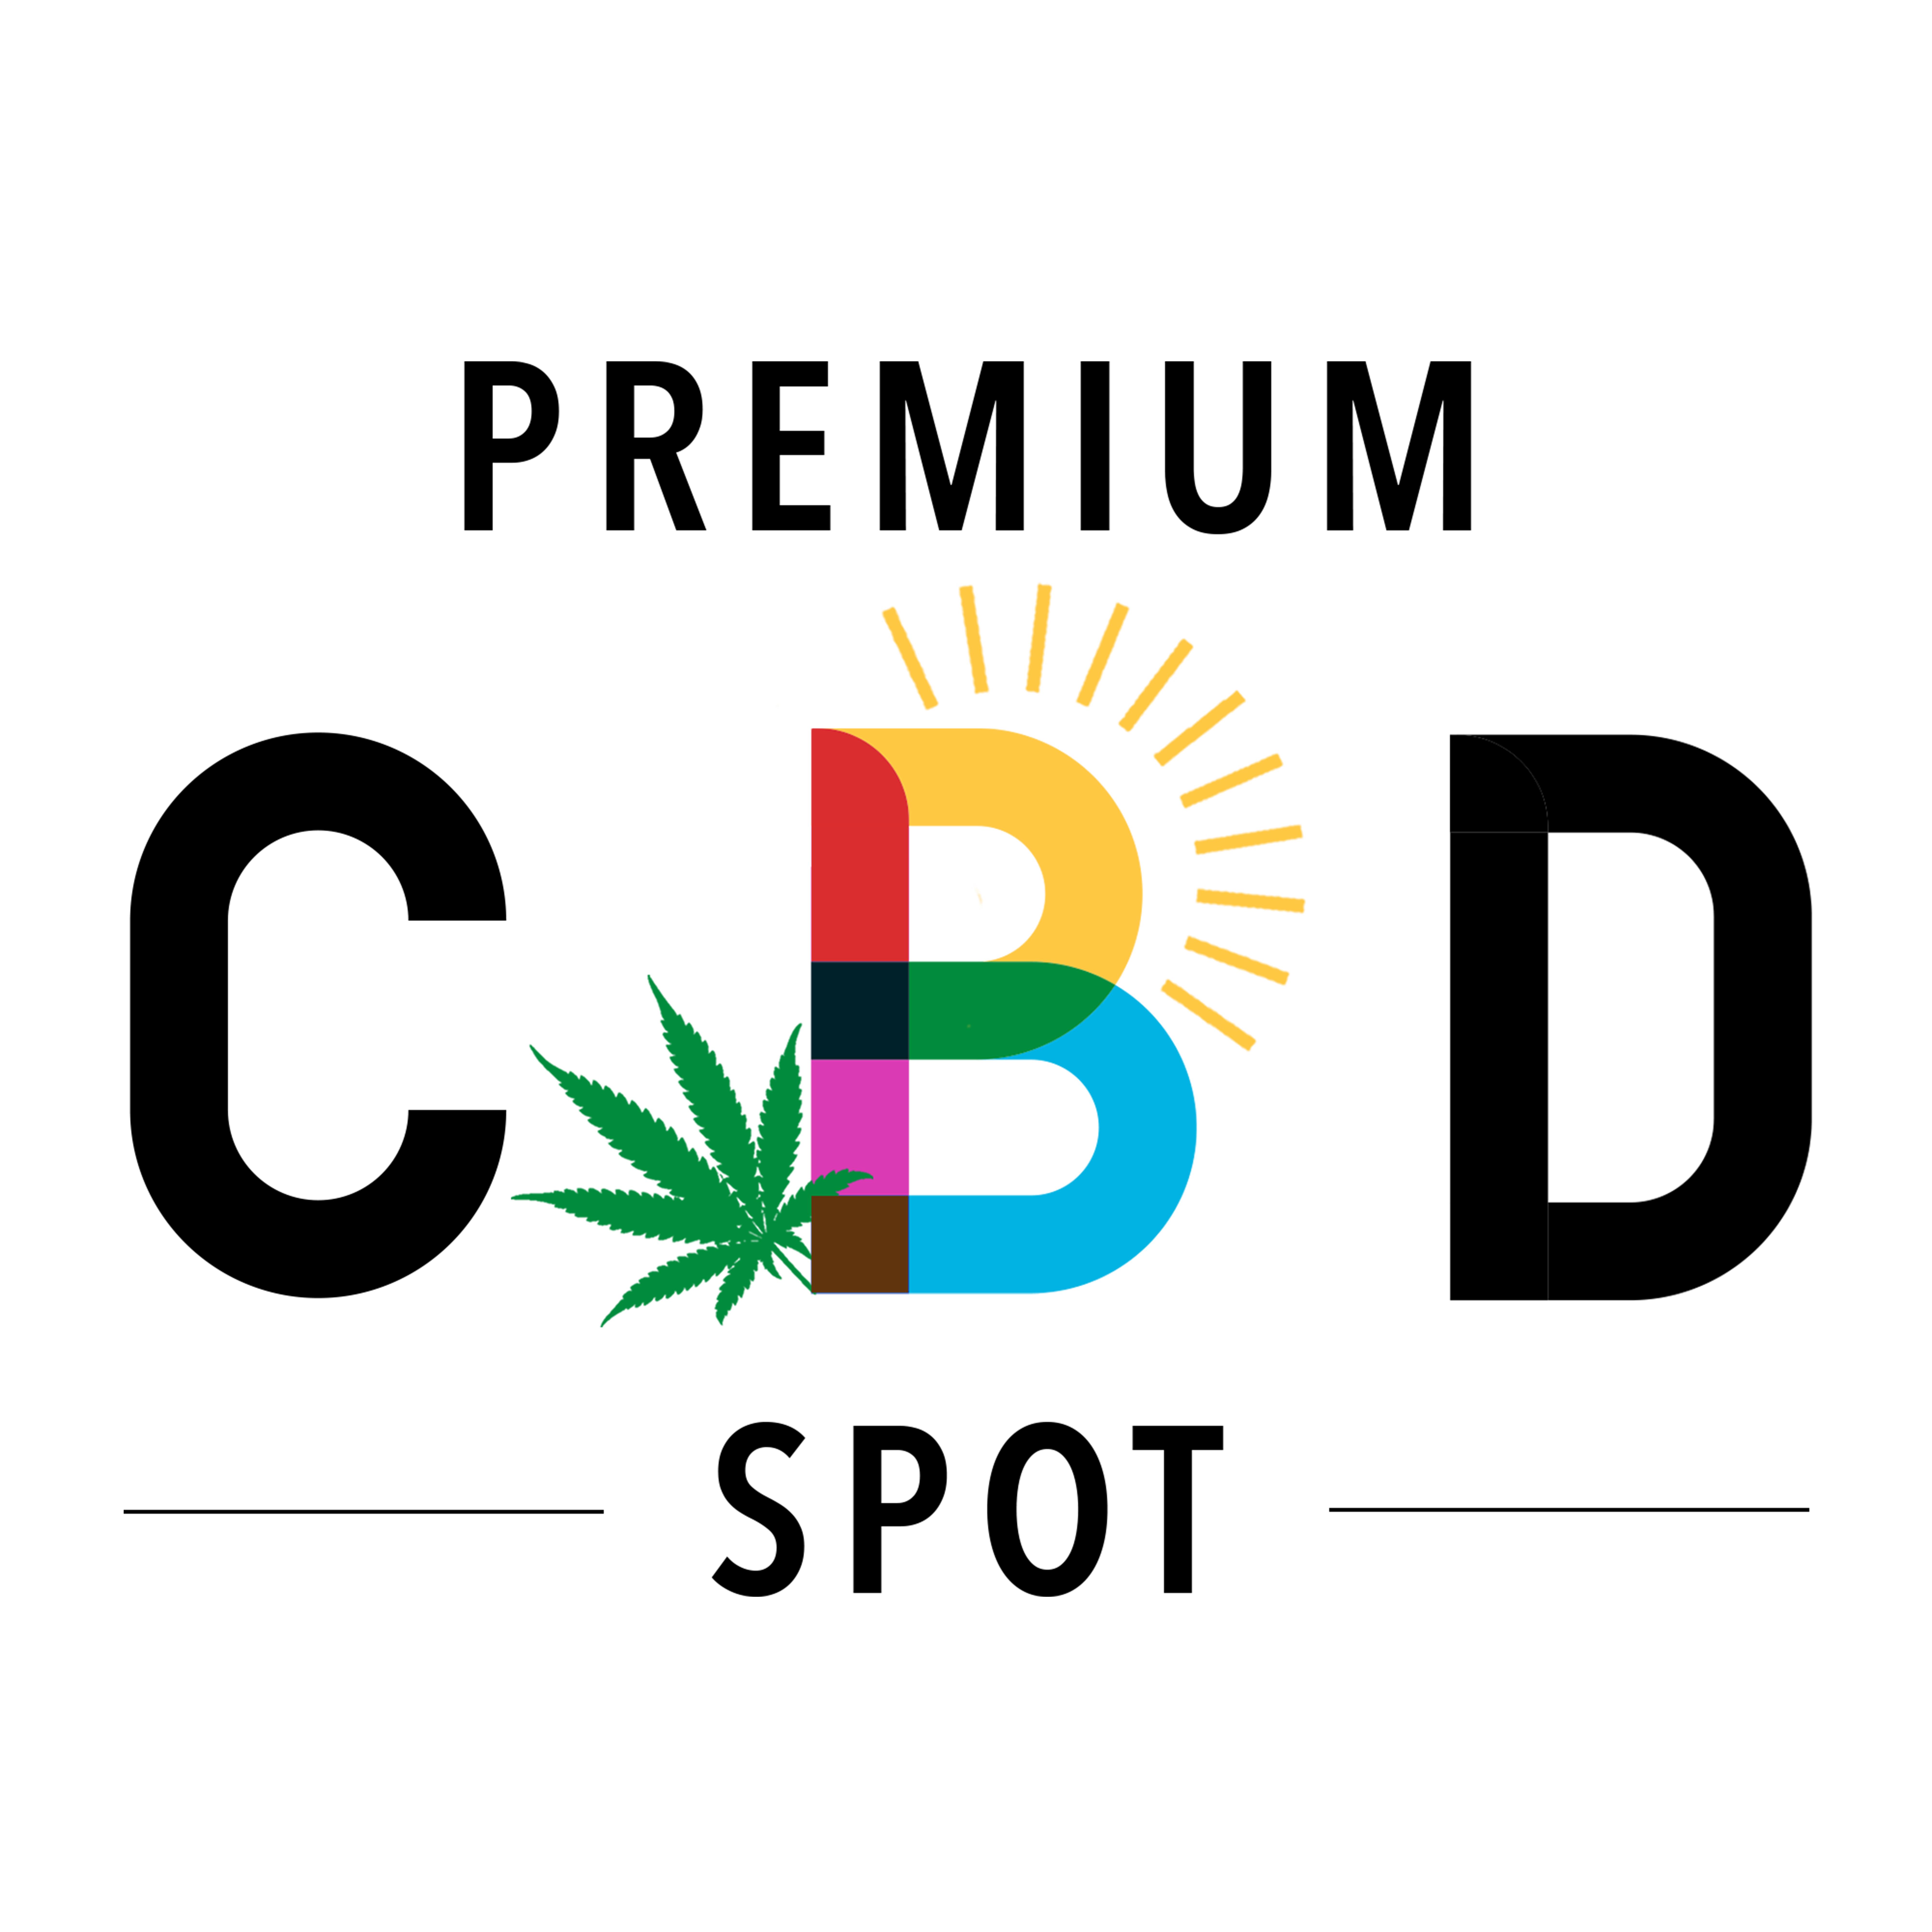 Premium CBD Spot Logo